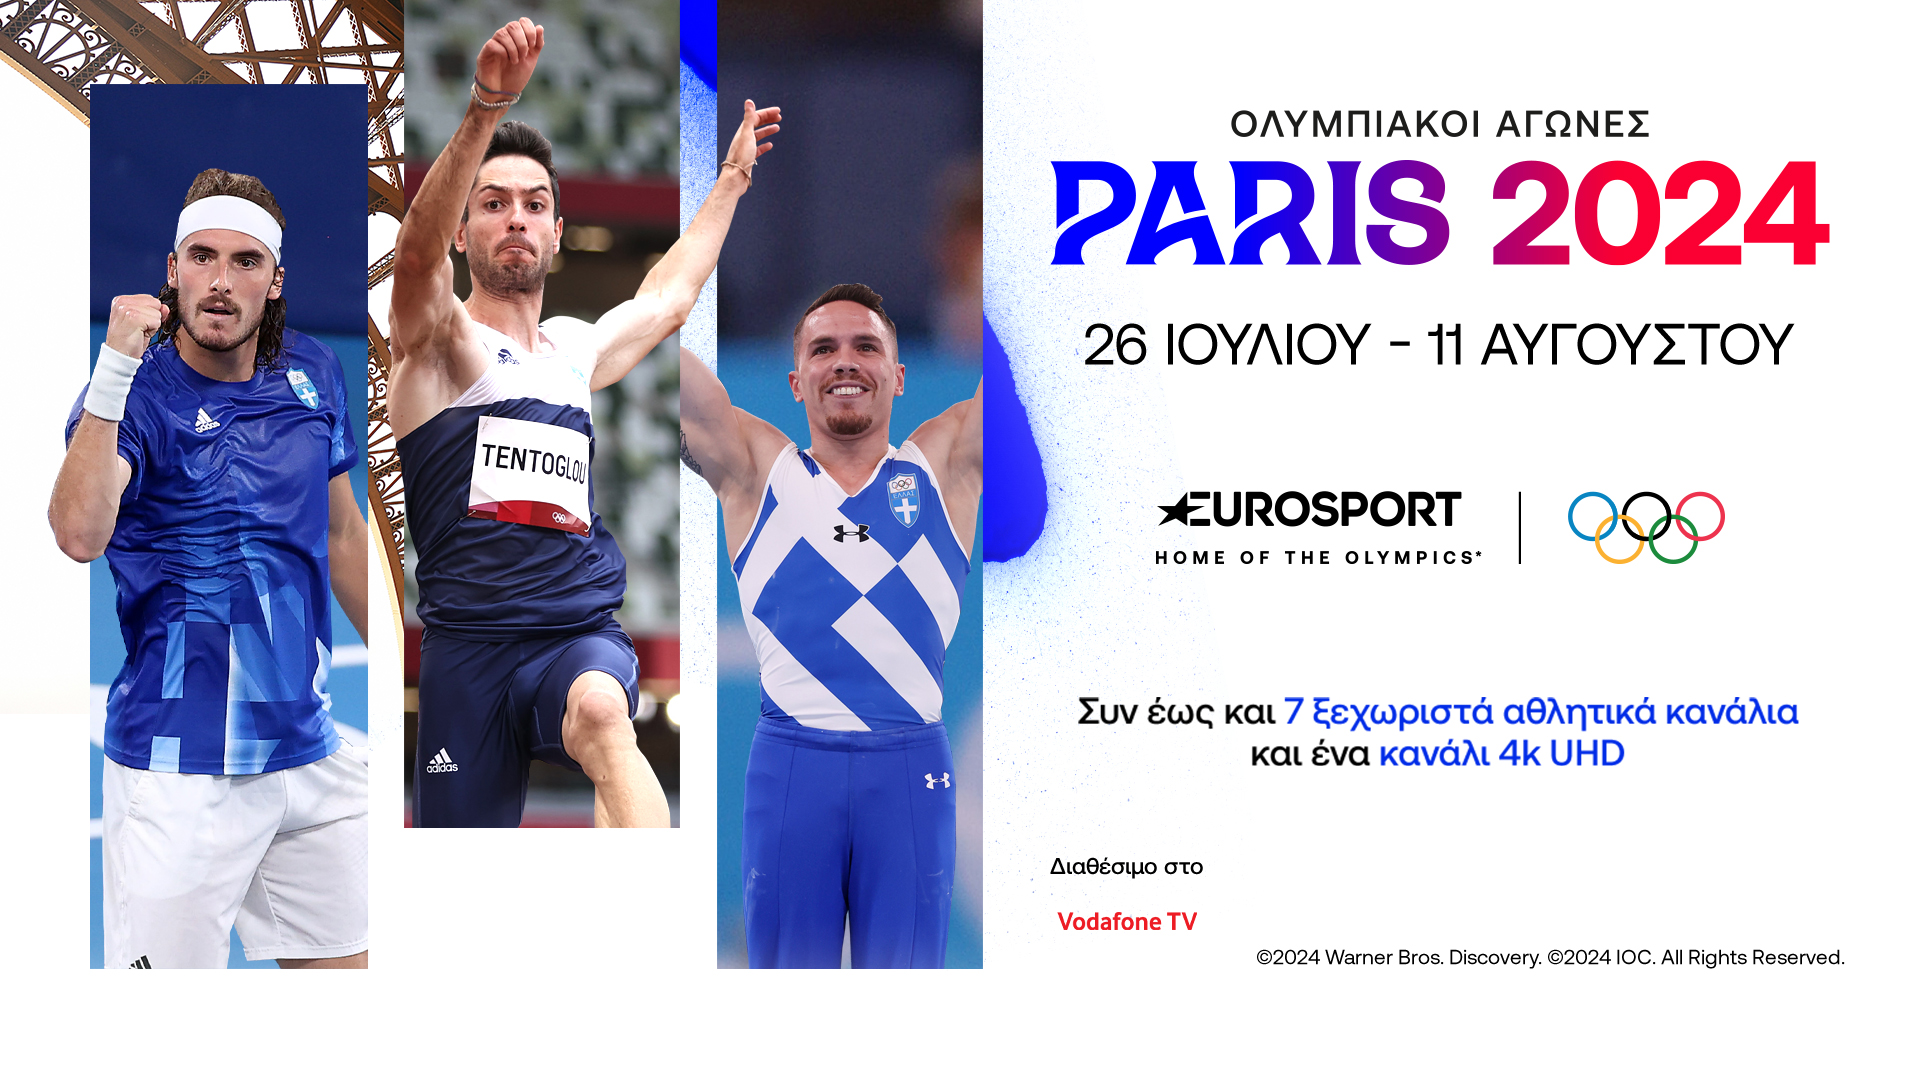 Ζήσε τη μαγεία των Ολυμπιακών Αγώνων στα 7+1 pop up κανάλια του Eurosport, που θα βρεις αποκλειστικά στο Vodafone TV